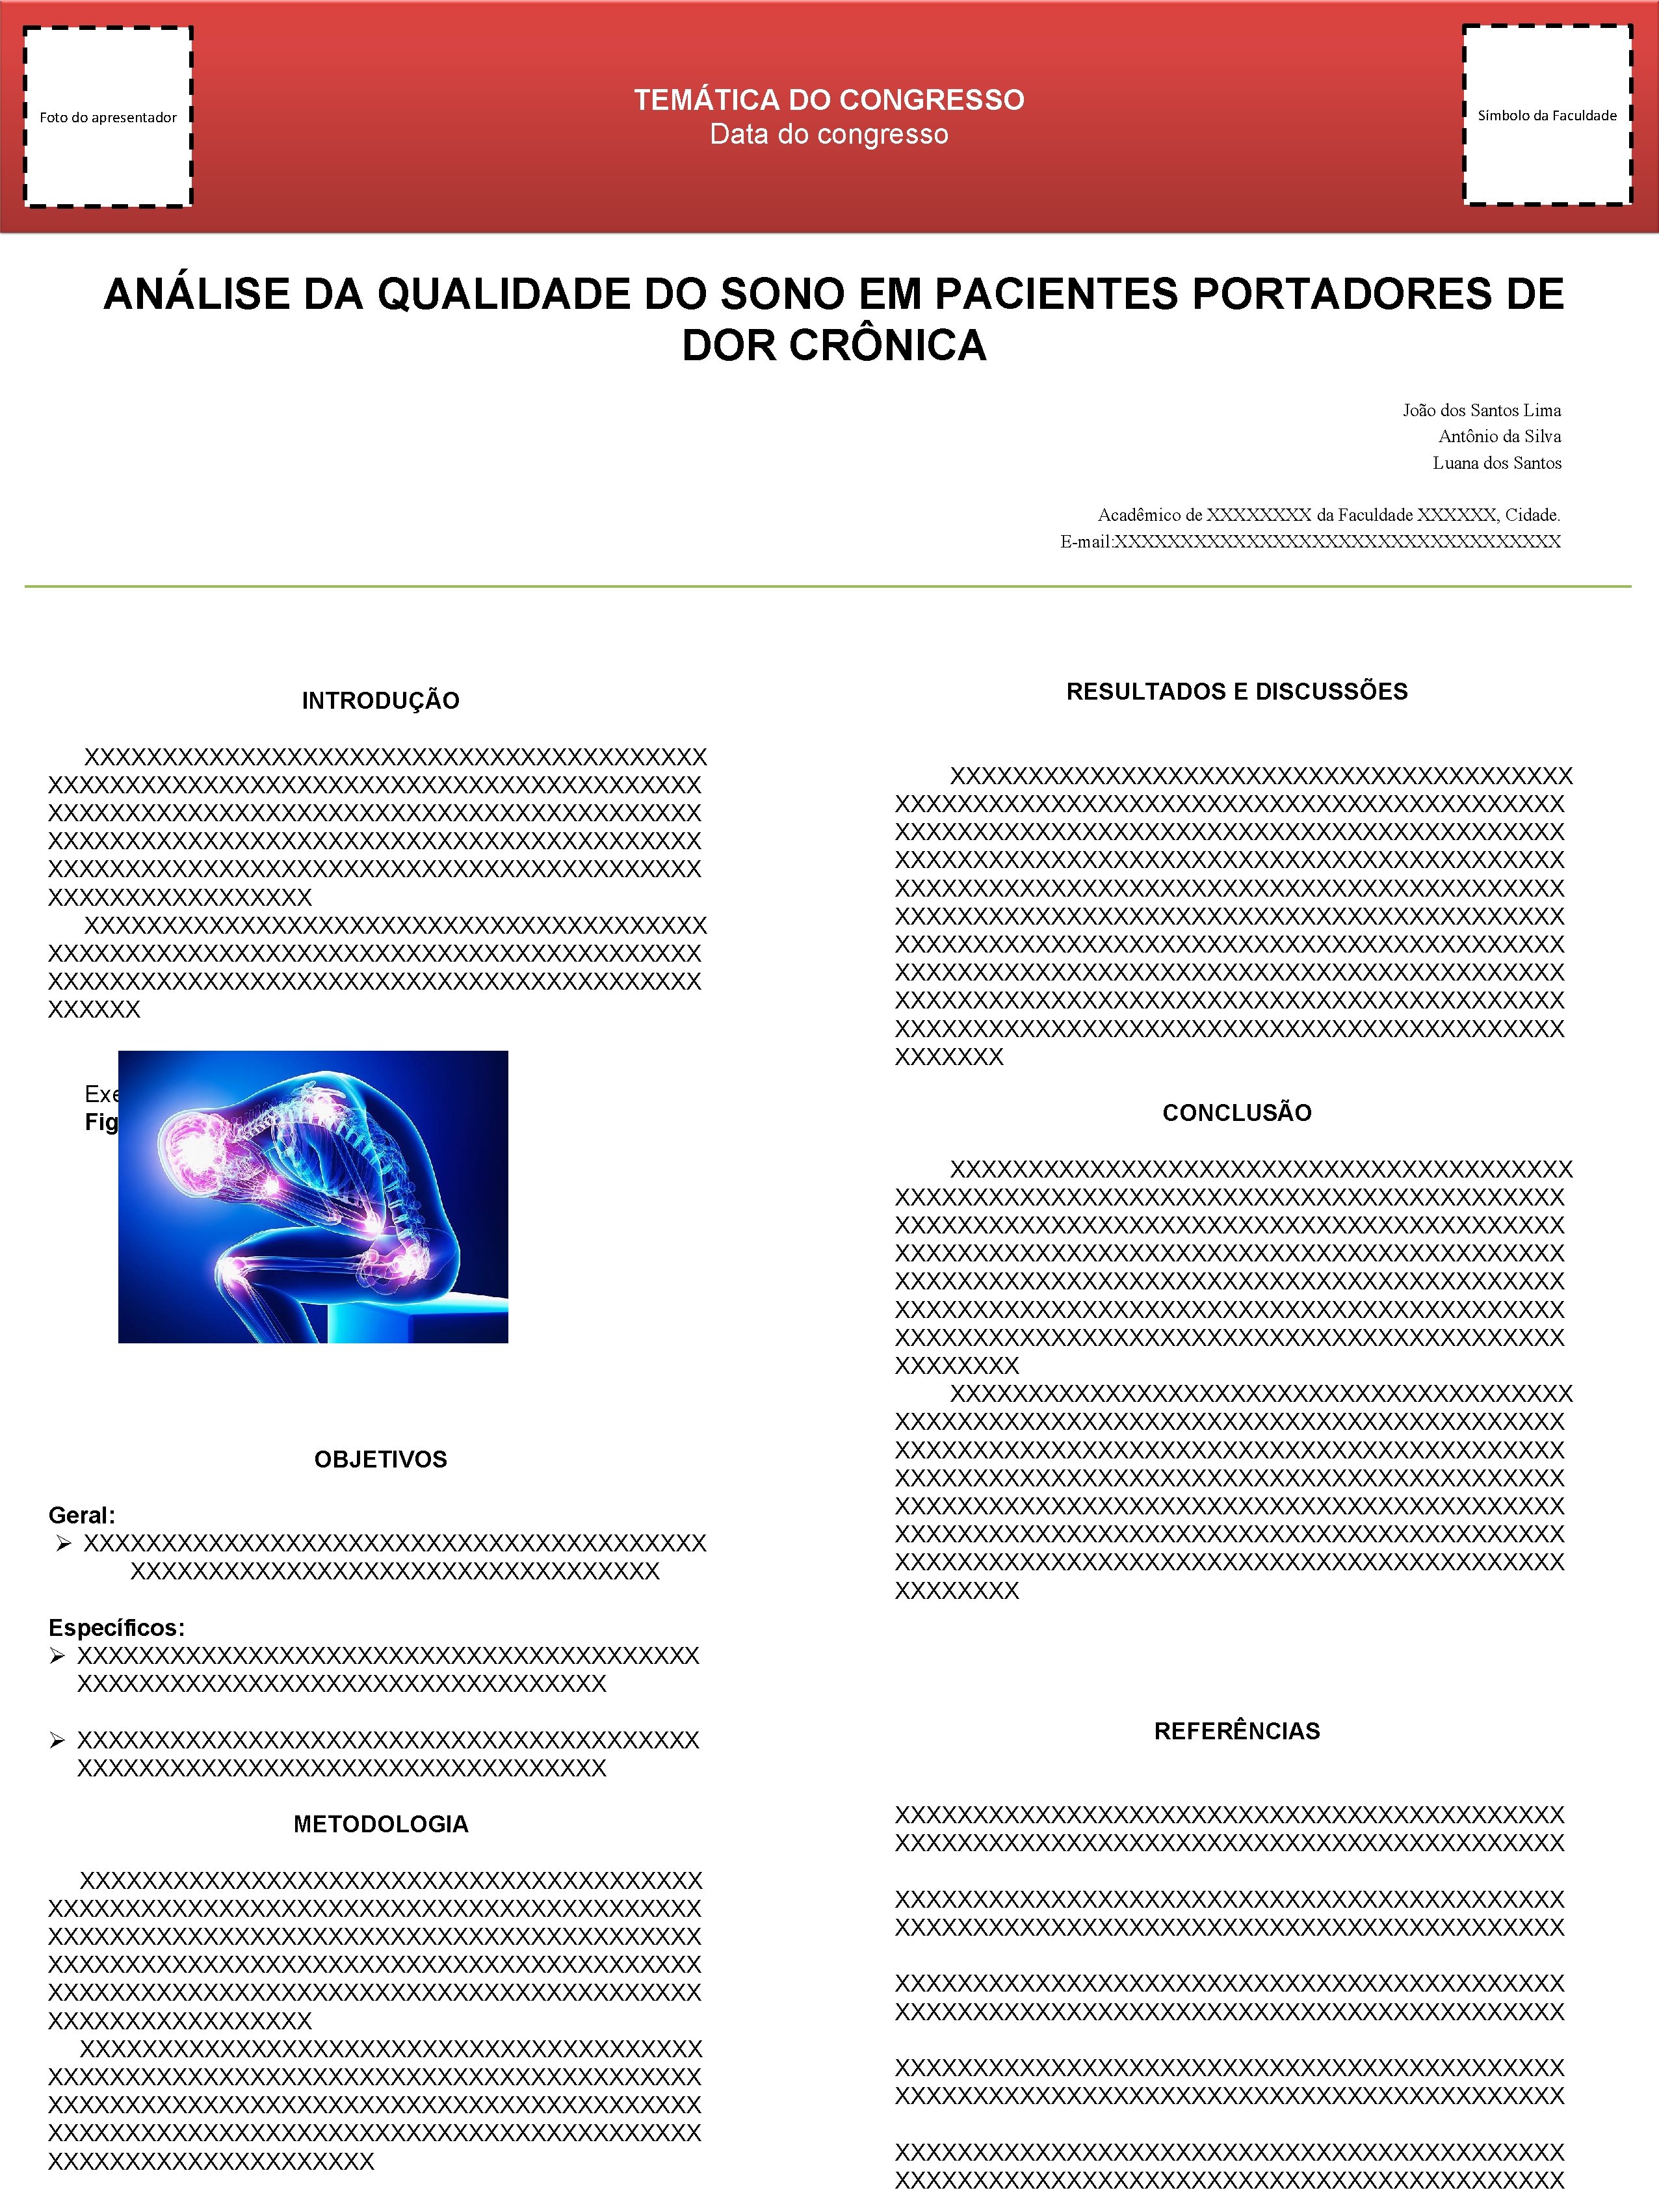 TEMÁTICA DO CONGRESSO Data do congresso Foto do apresentador Símbolo da Faculdade ANÁLISE DA